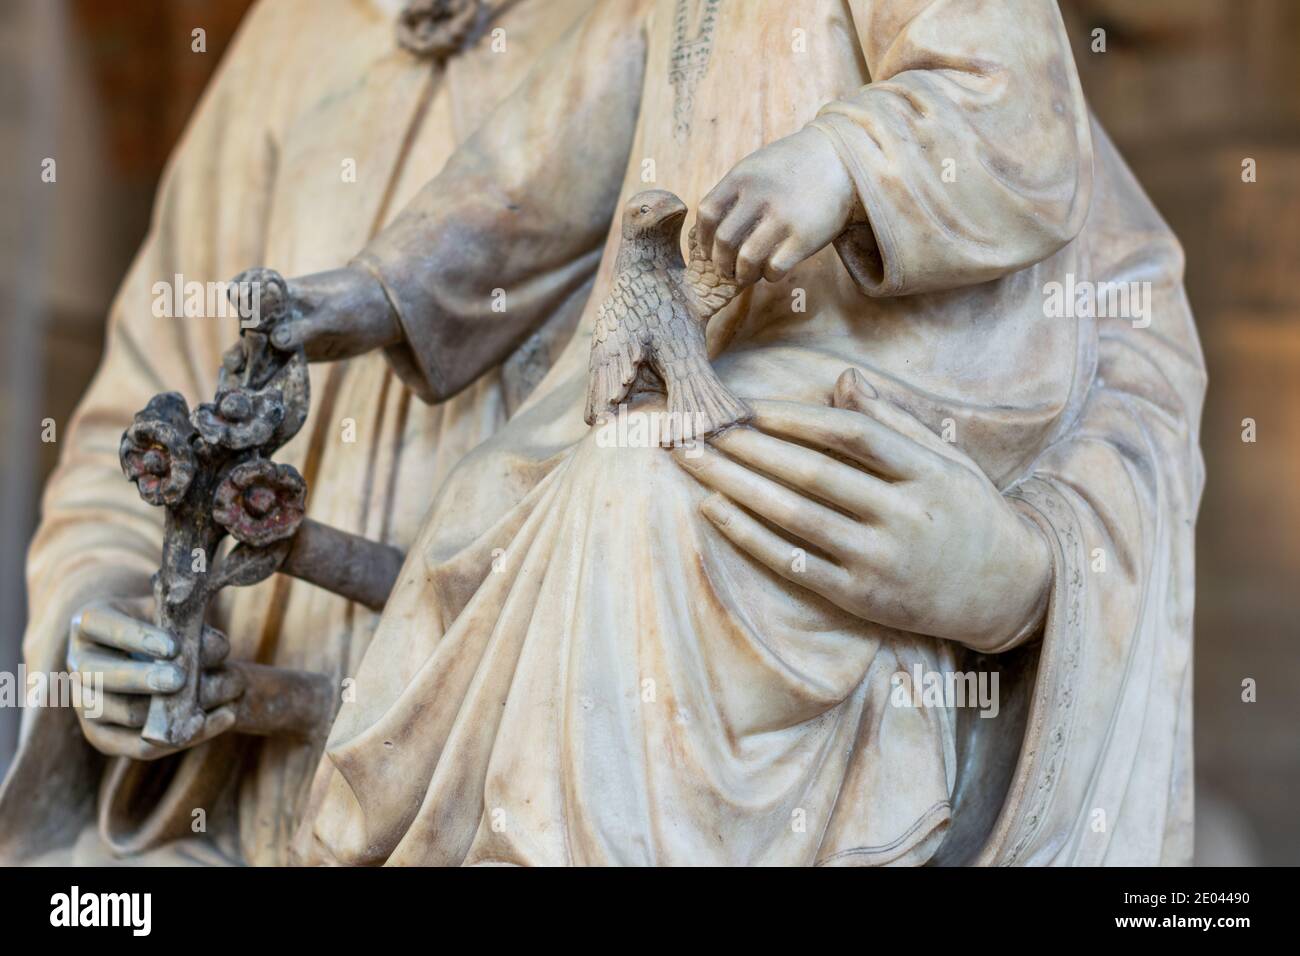 Détail de la statue de la Madonna de la Rose du XIVe siècle par Tedesco, tenue à l'Orsanmichele, Florence Banque D'Images